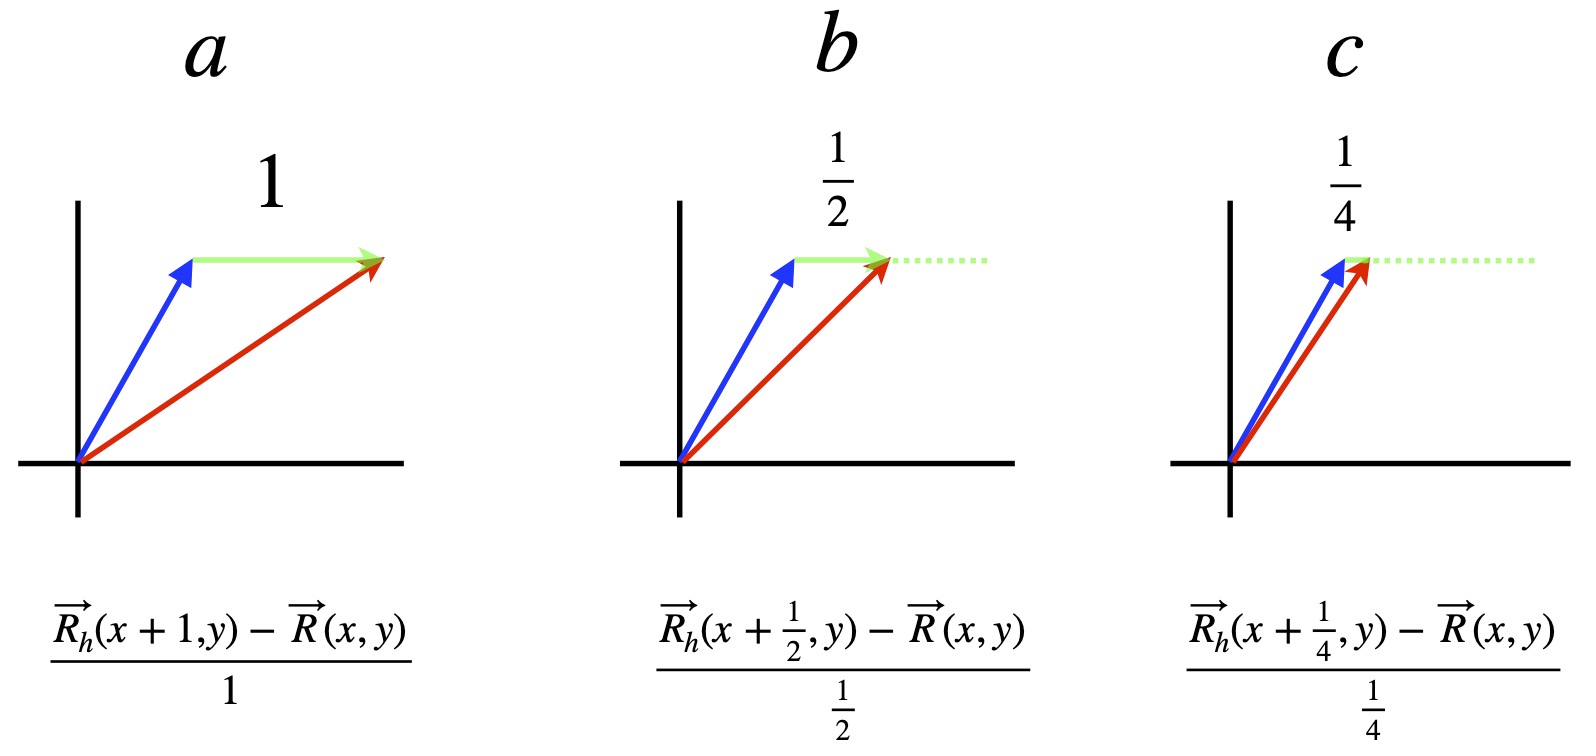 Basis vector transformations